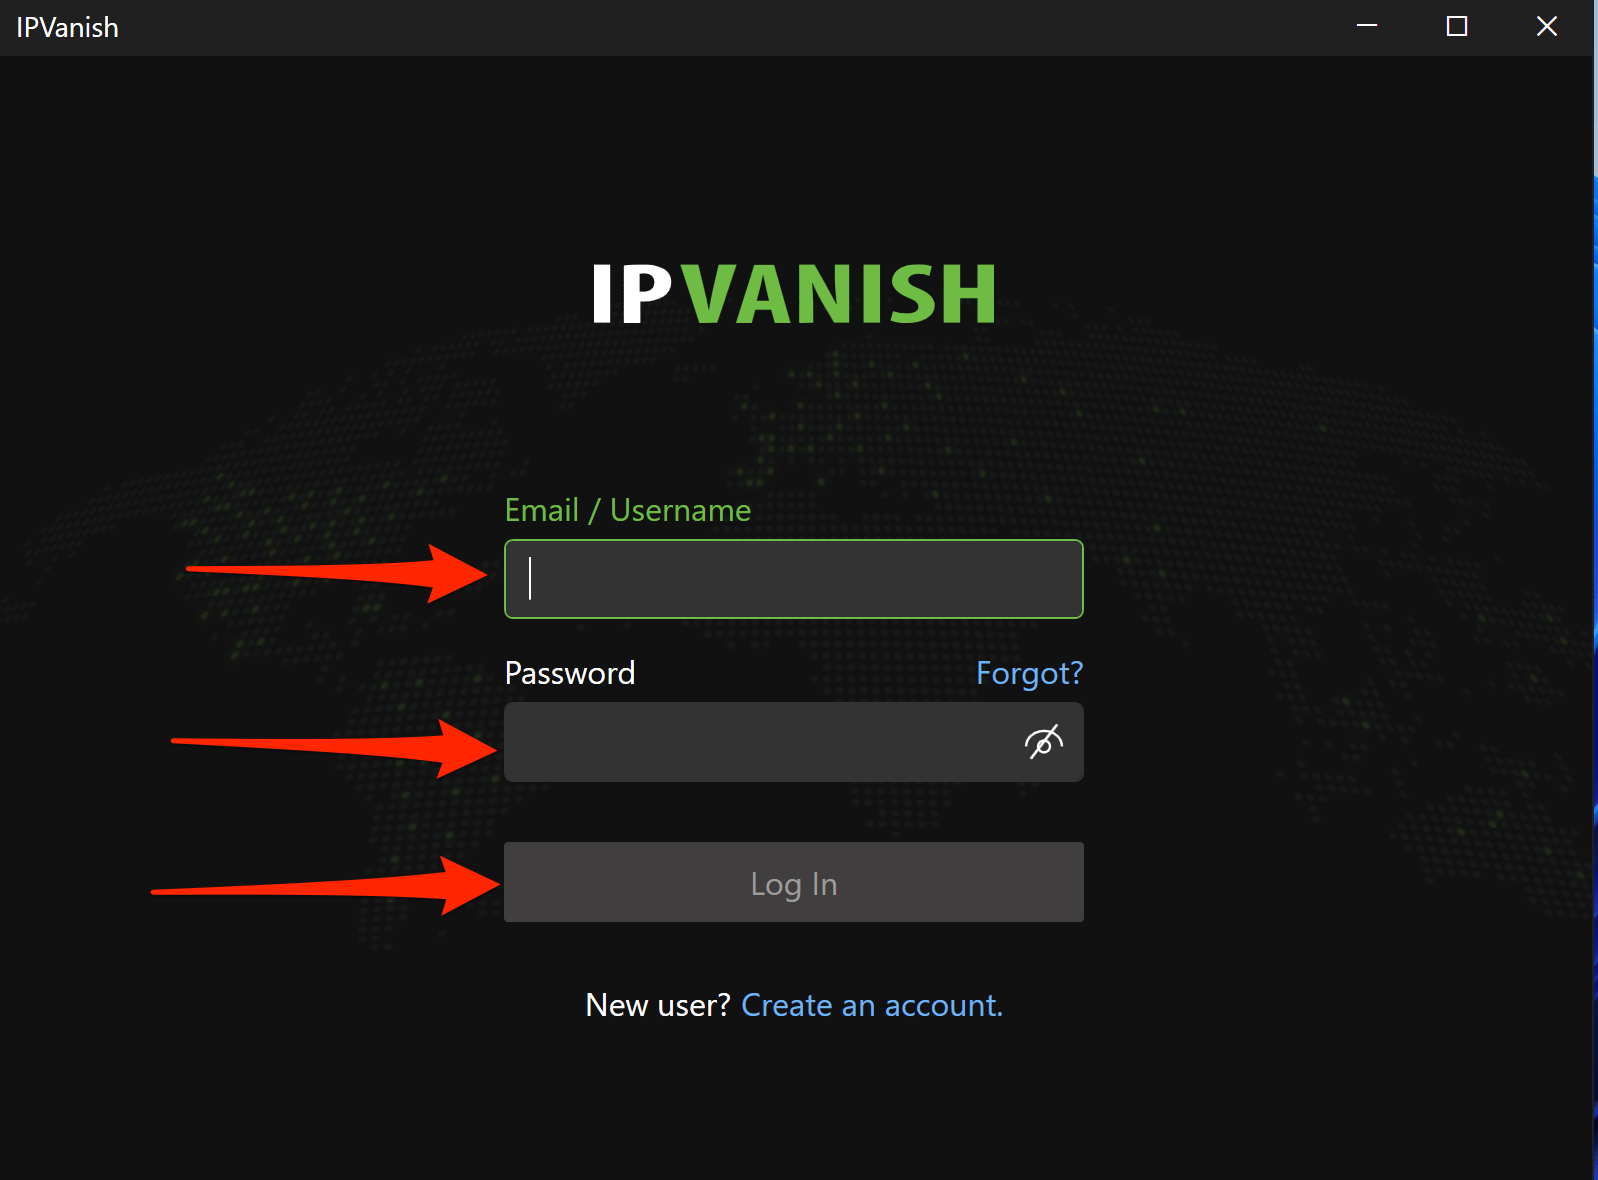 ipvanish account sign in